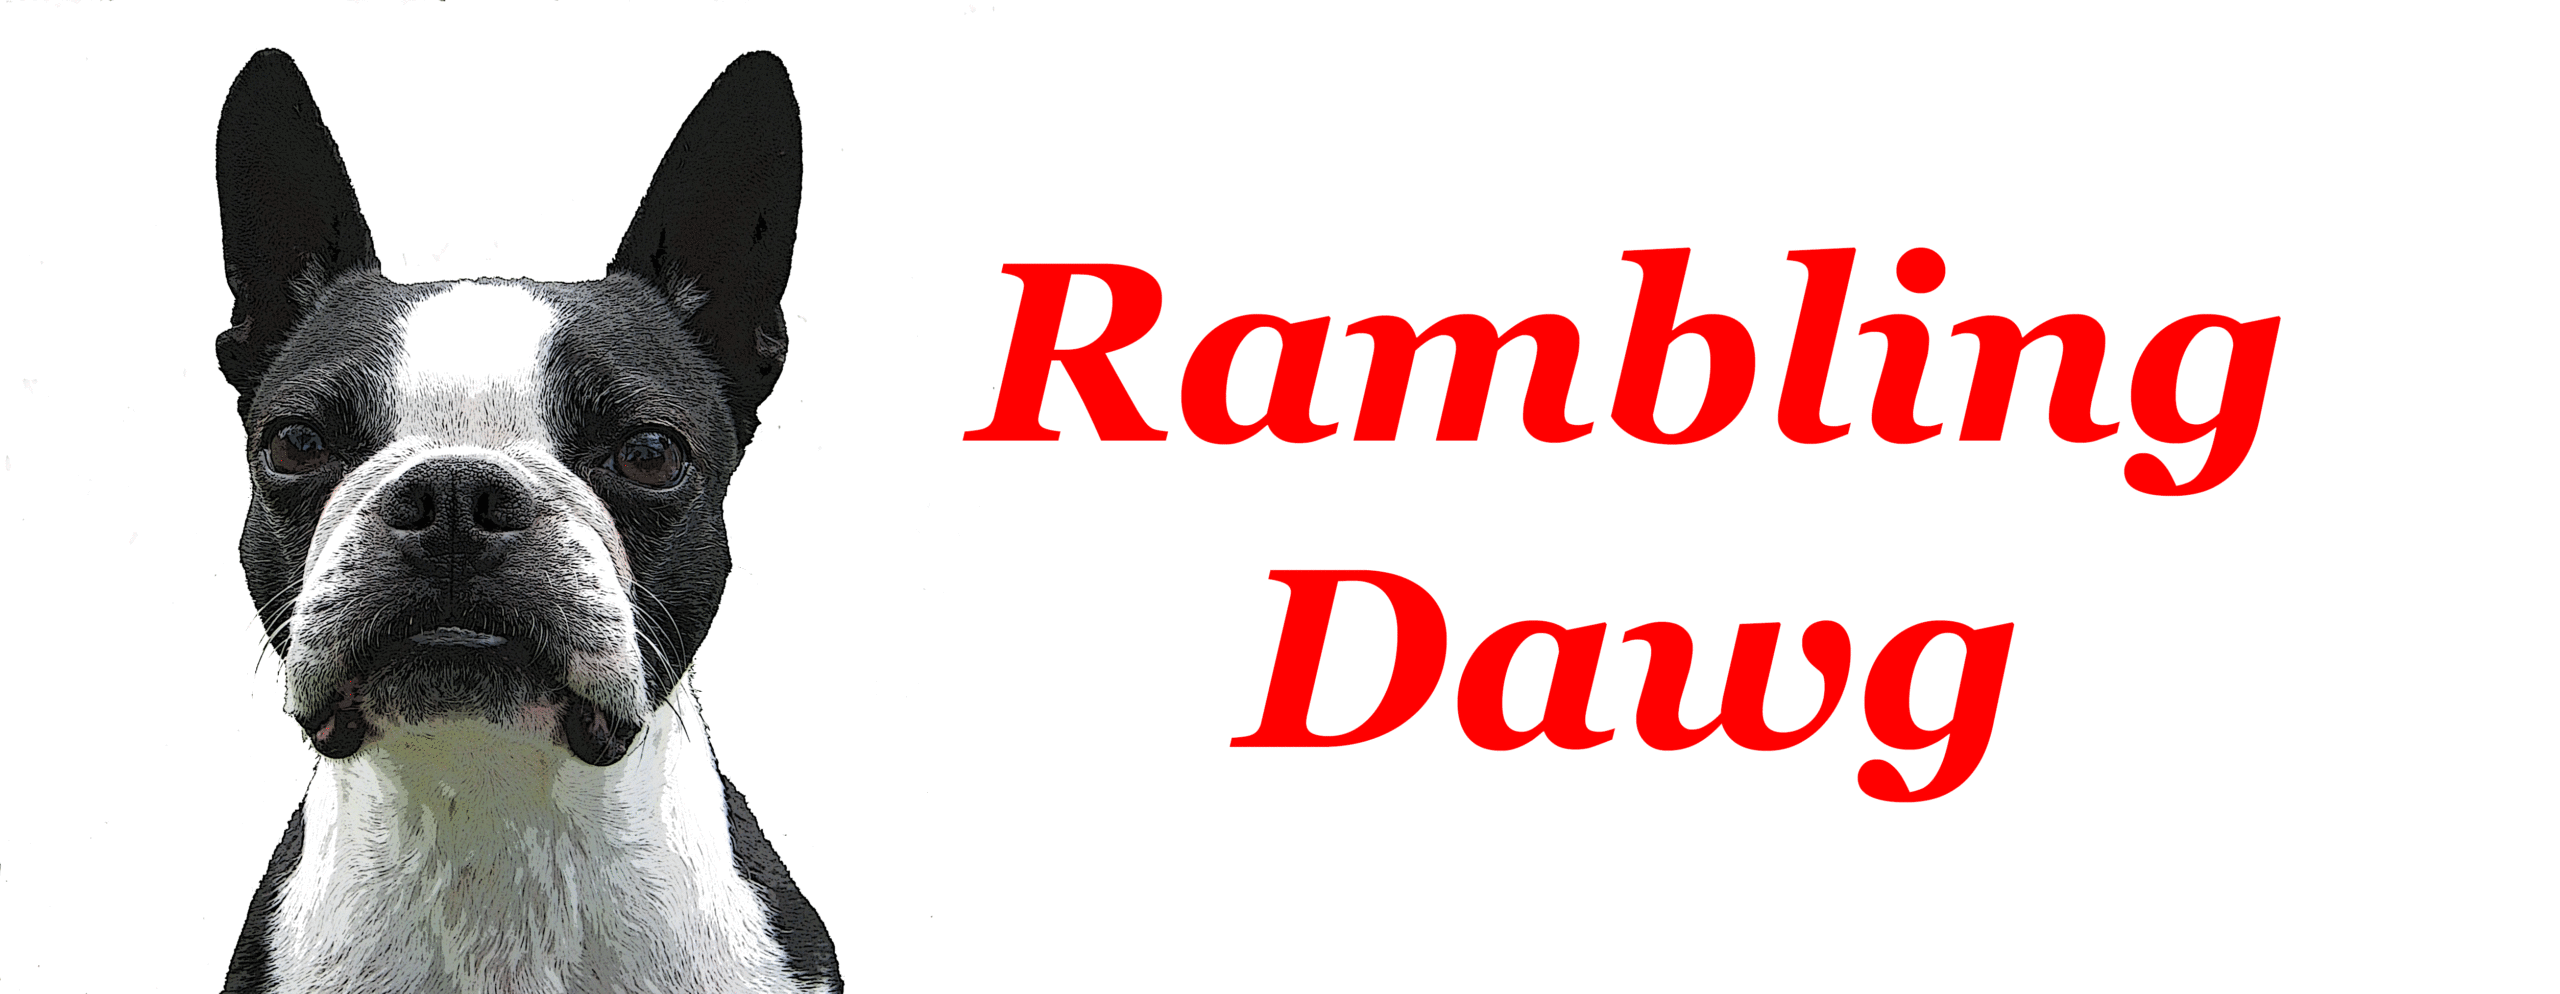 The Rambling Dawg